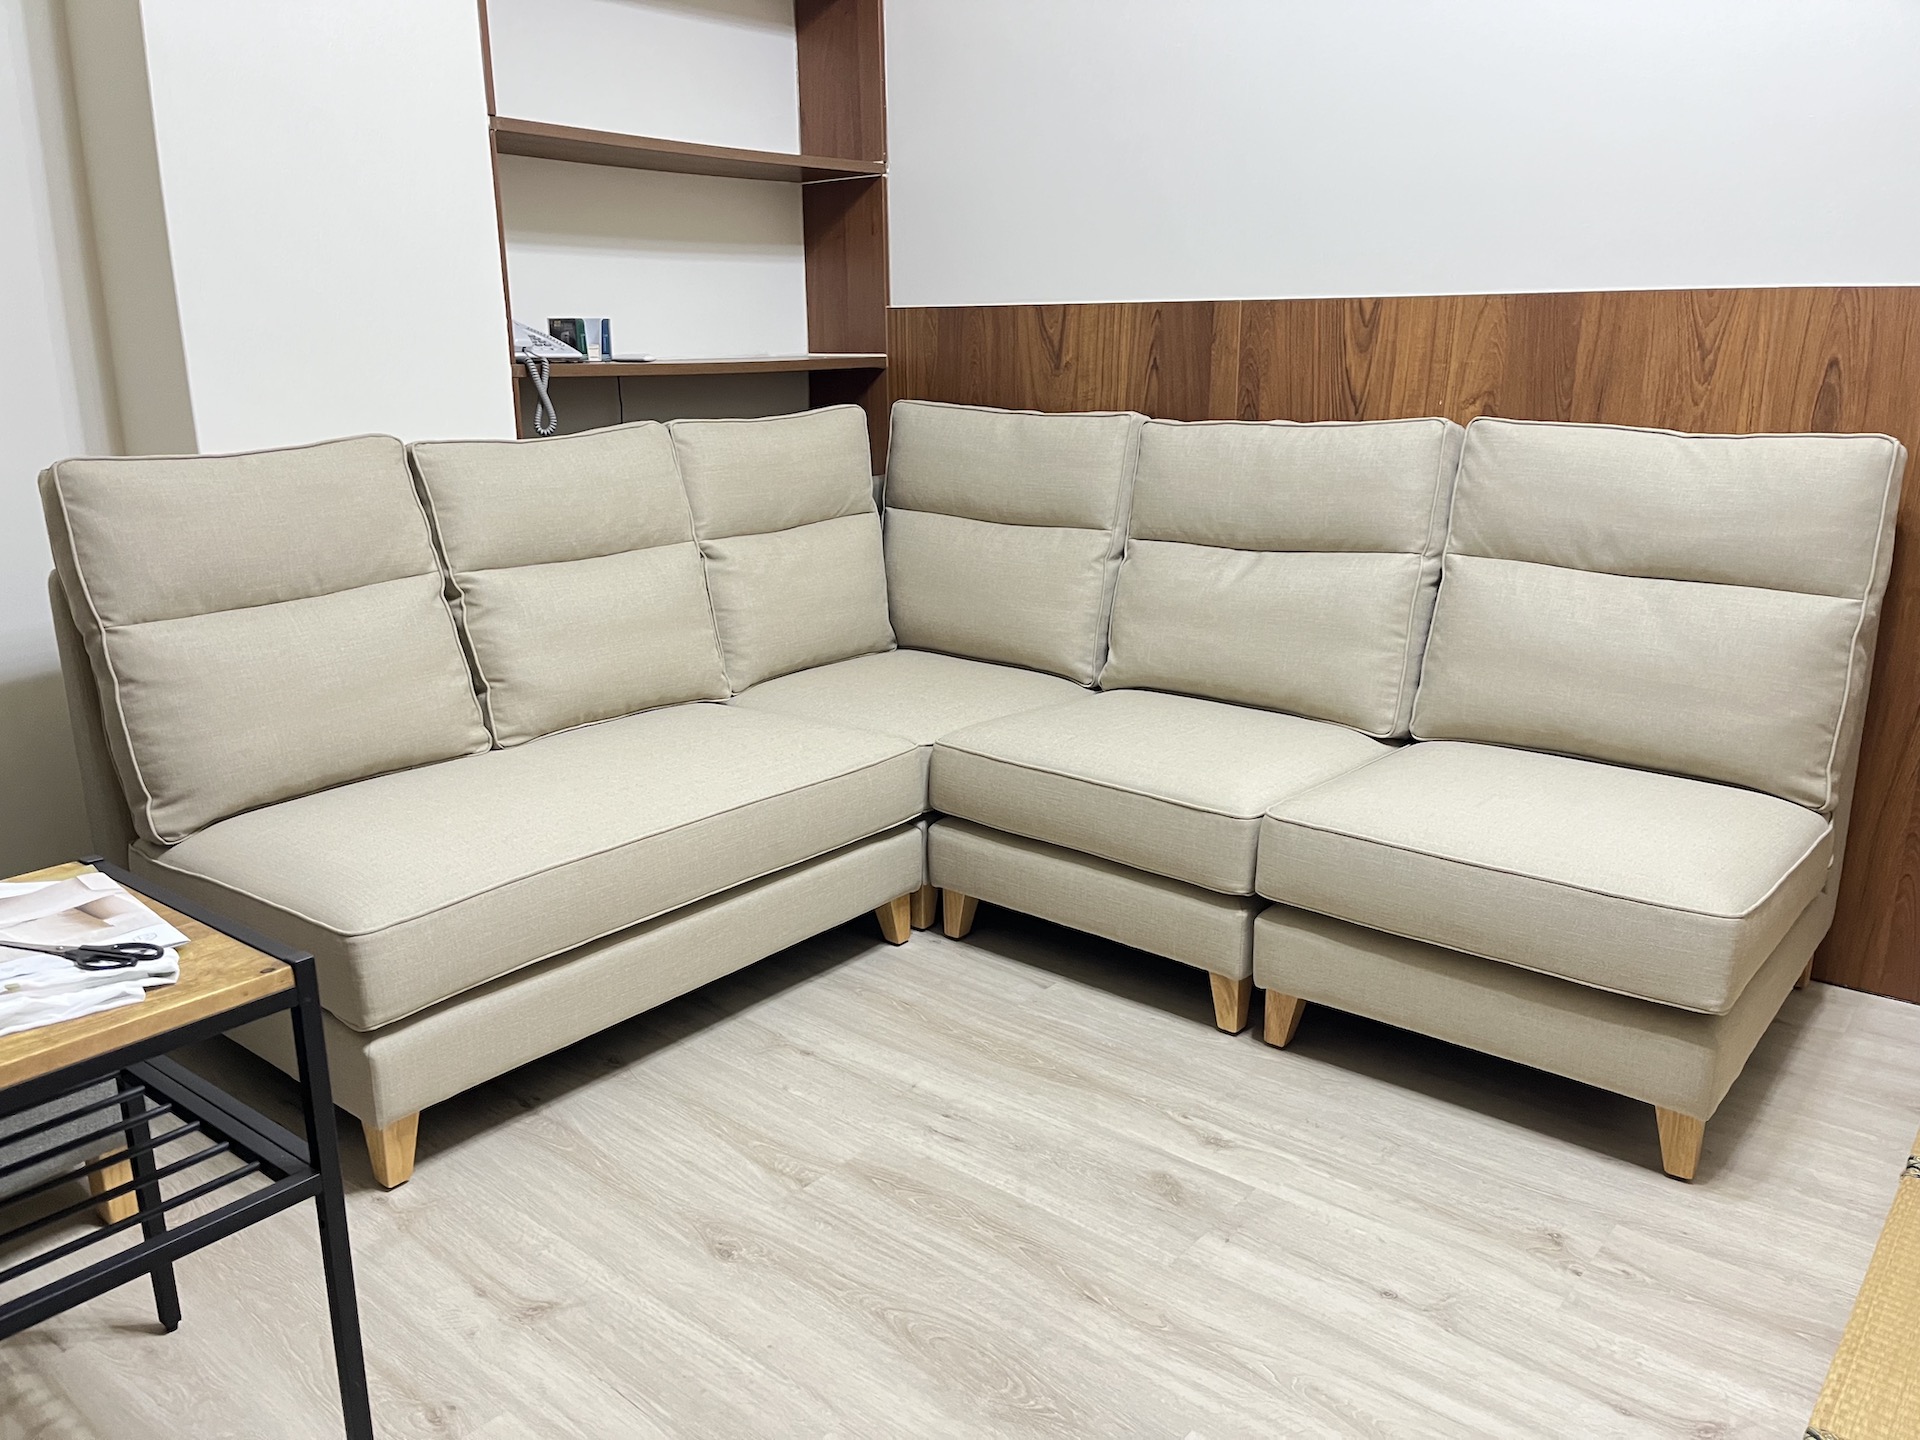 【客戶案例分享】台中西區模組式布沙發訂製